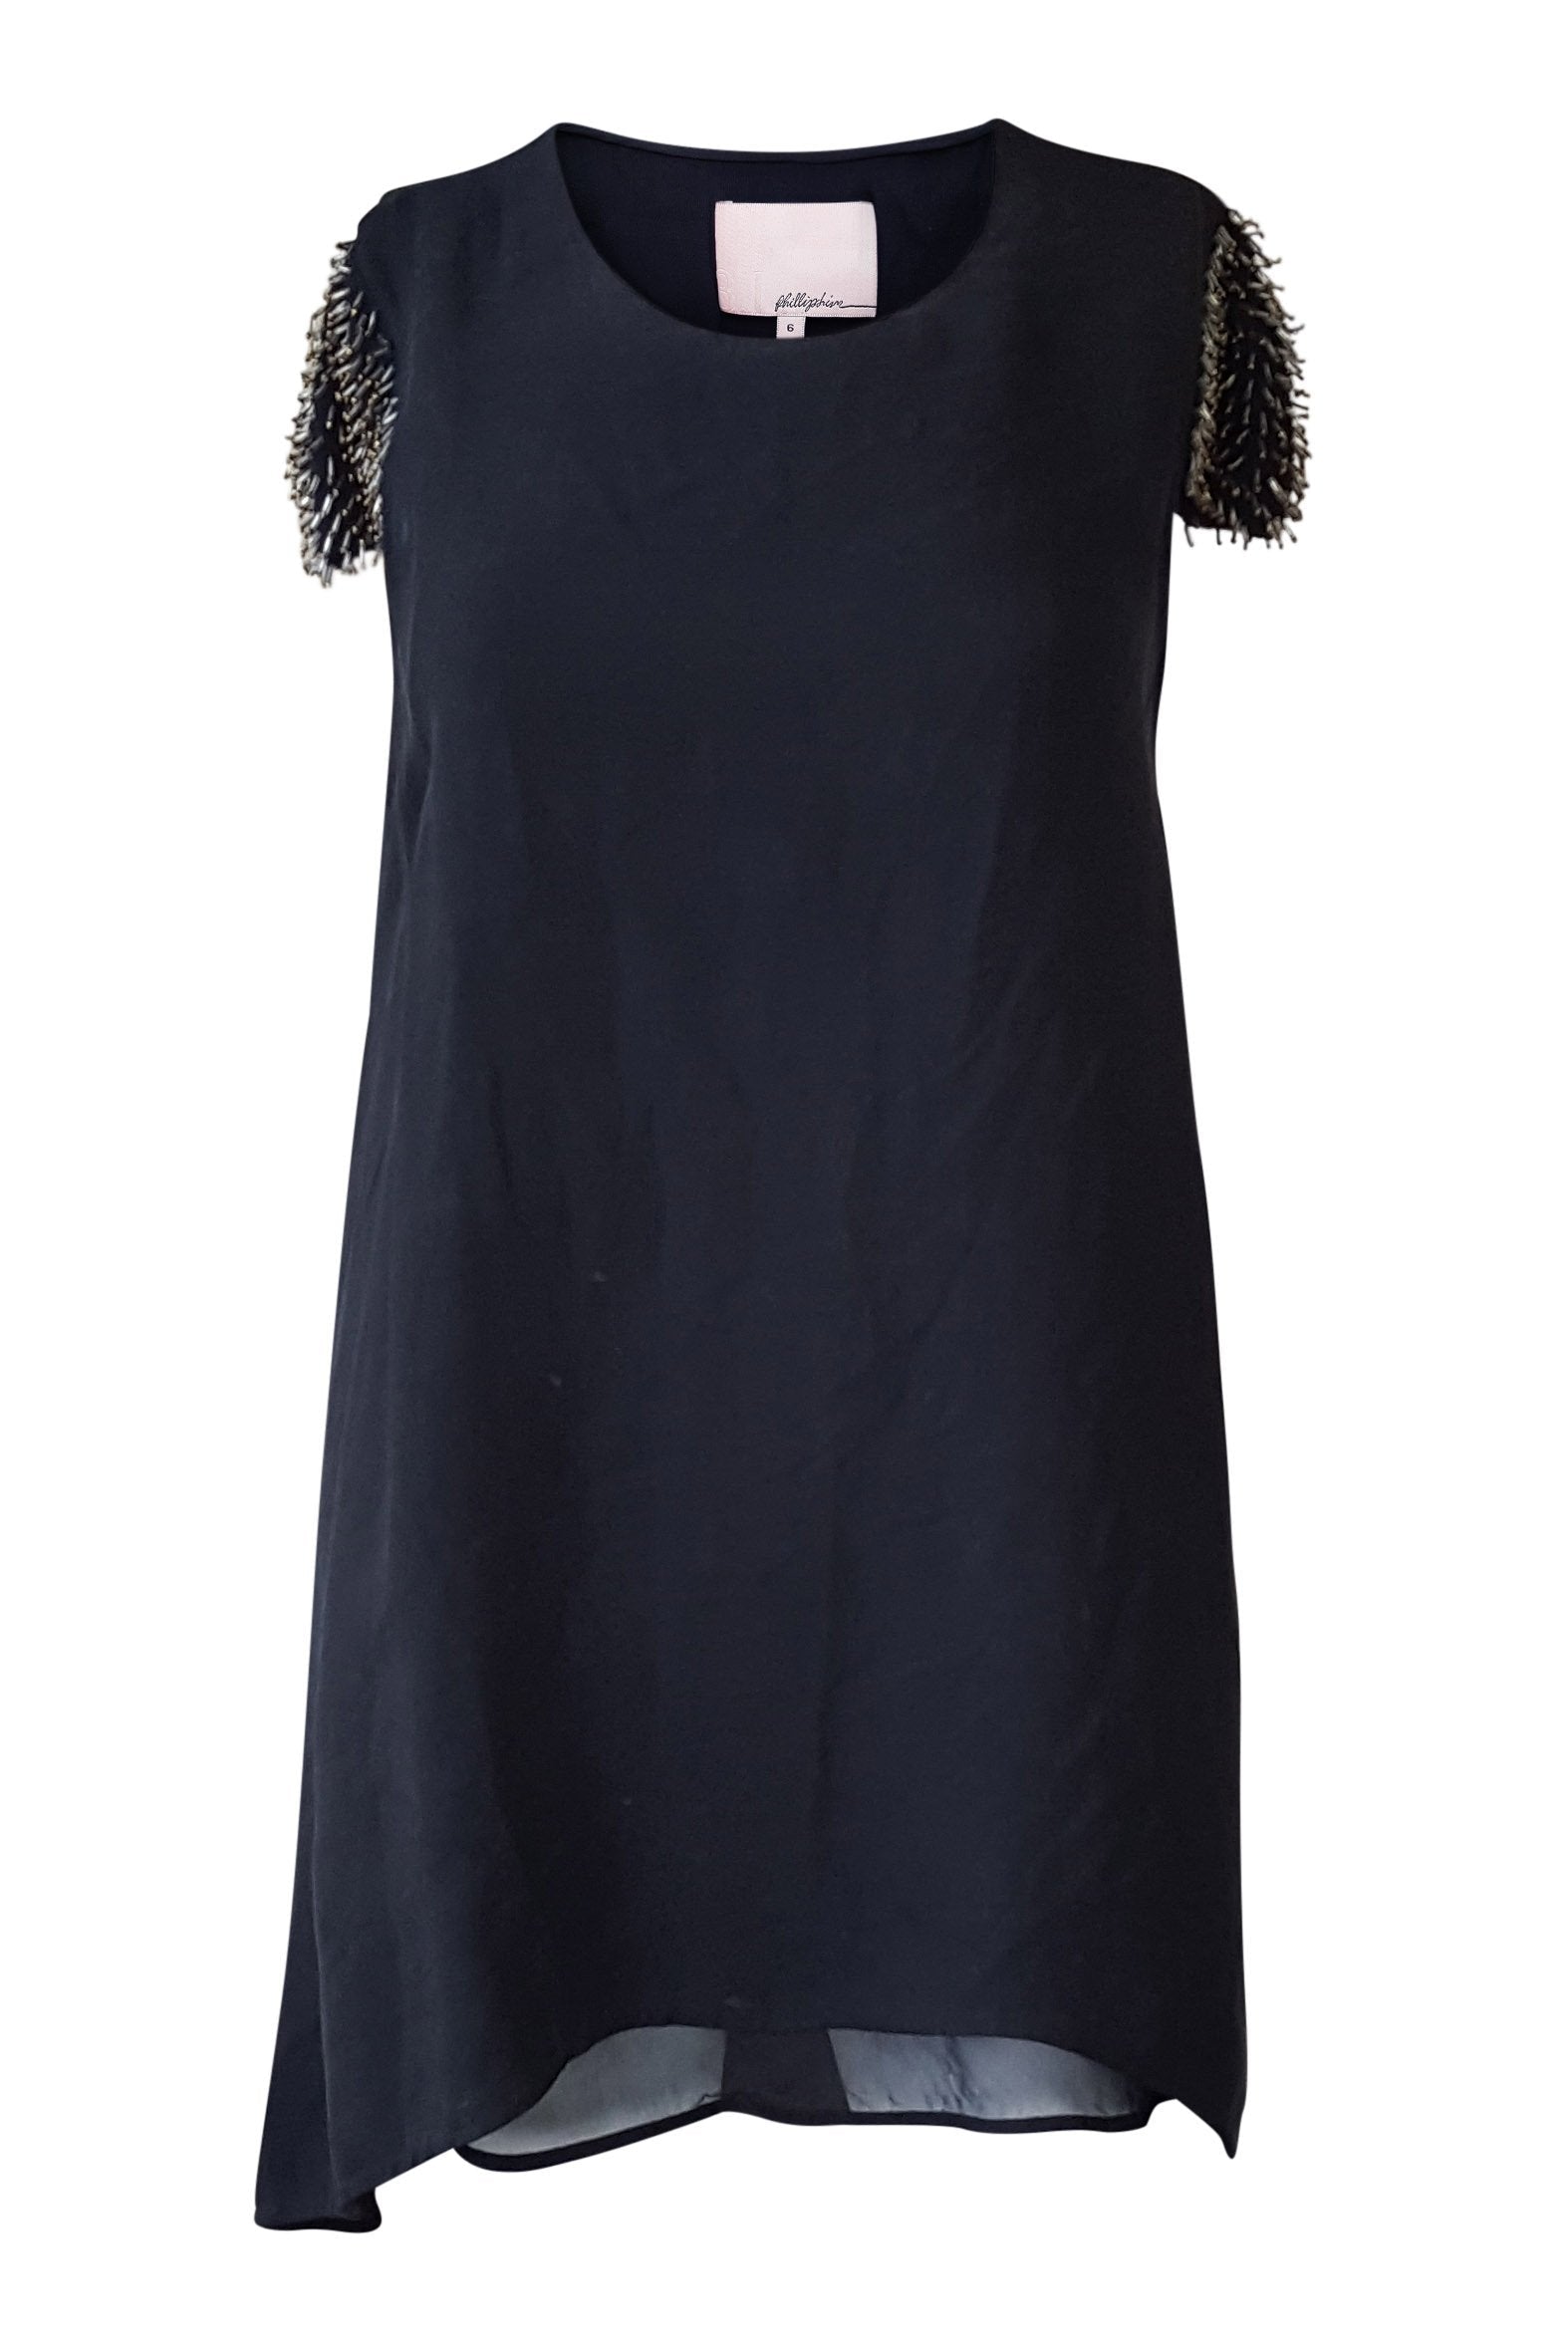 3.1 PHILLIP LIM Black Dress Short Sleeves Asymmetric Hem (UK 8) - Phillip Lim - The Freperie